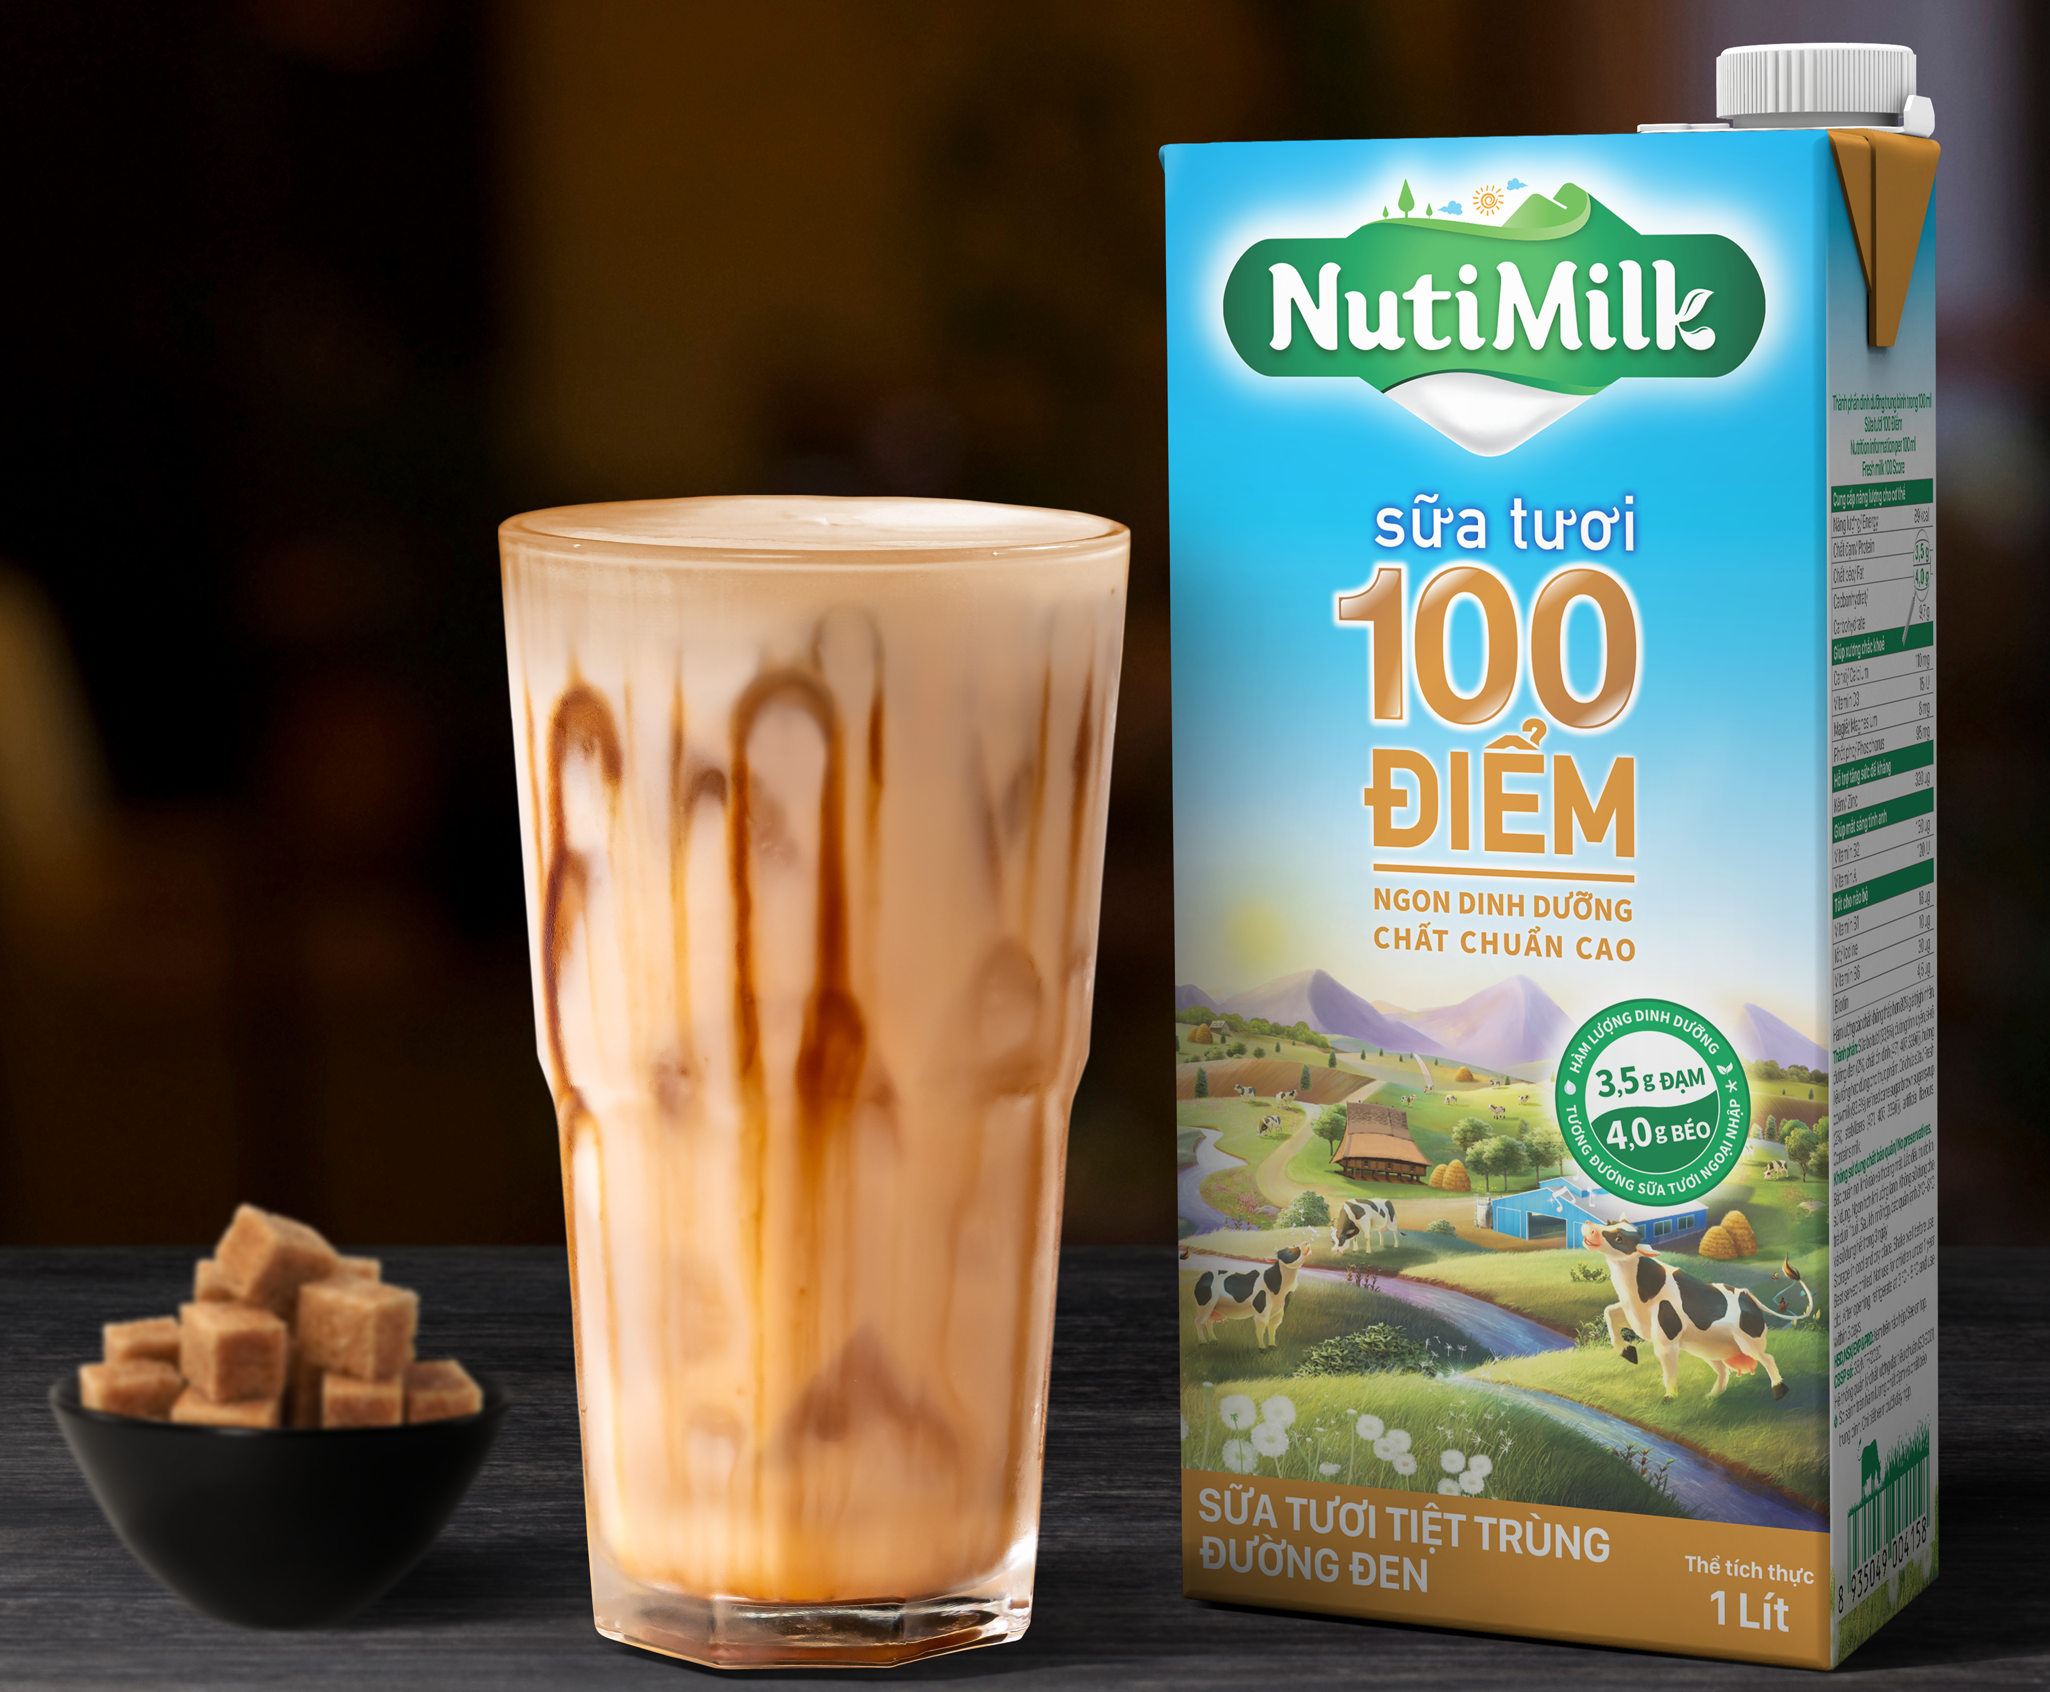 Đánh giá cao về chất lượng sữa tươi NutiMilk